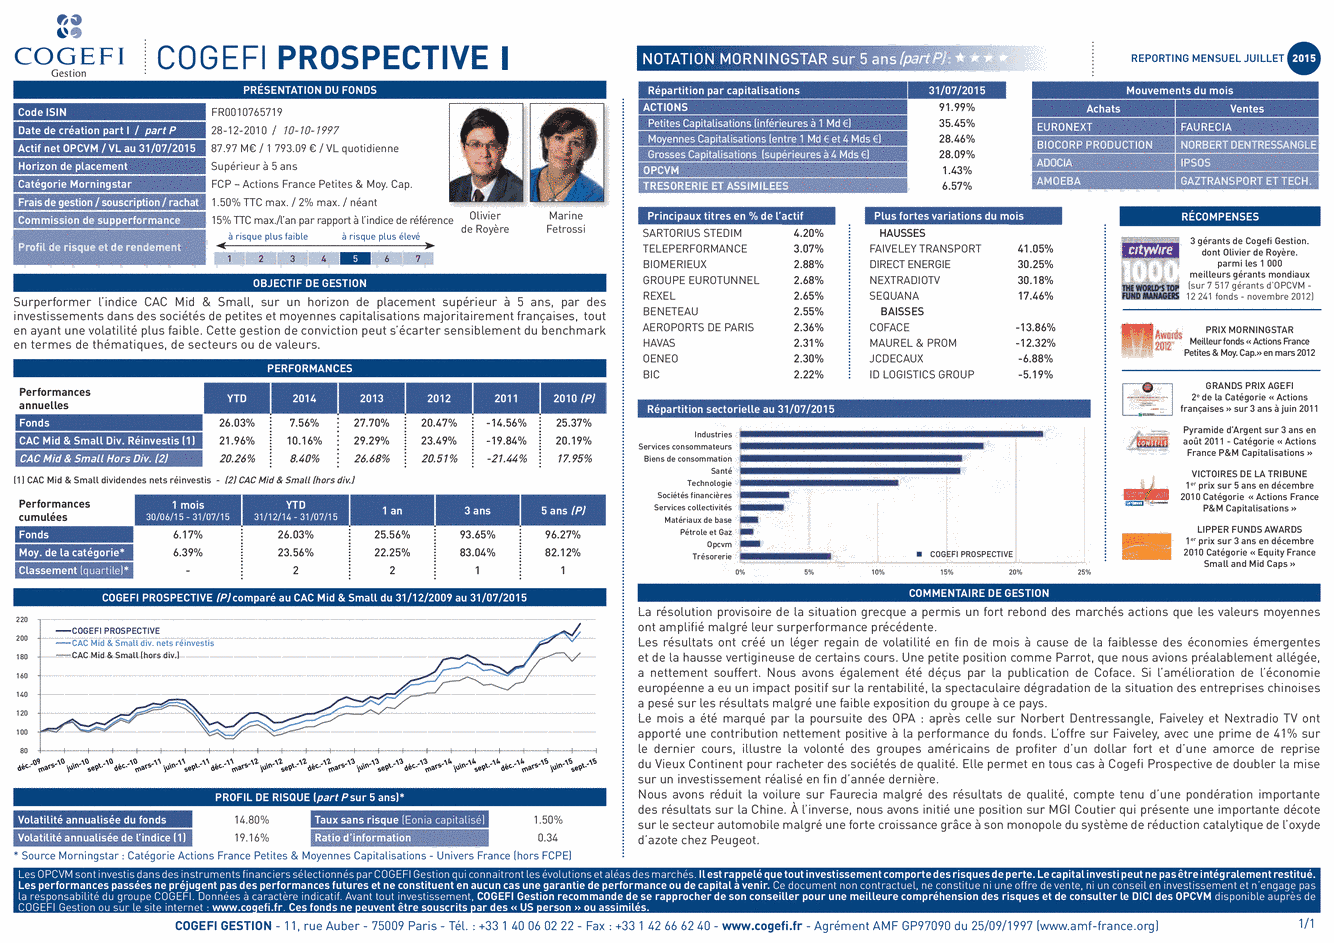 Fiche Produit Cogefi Prospective I - 31/07/2015 - Français